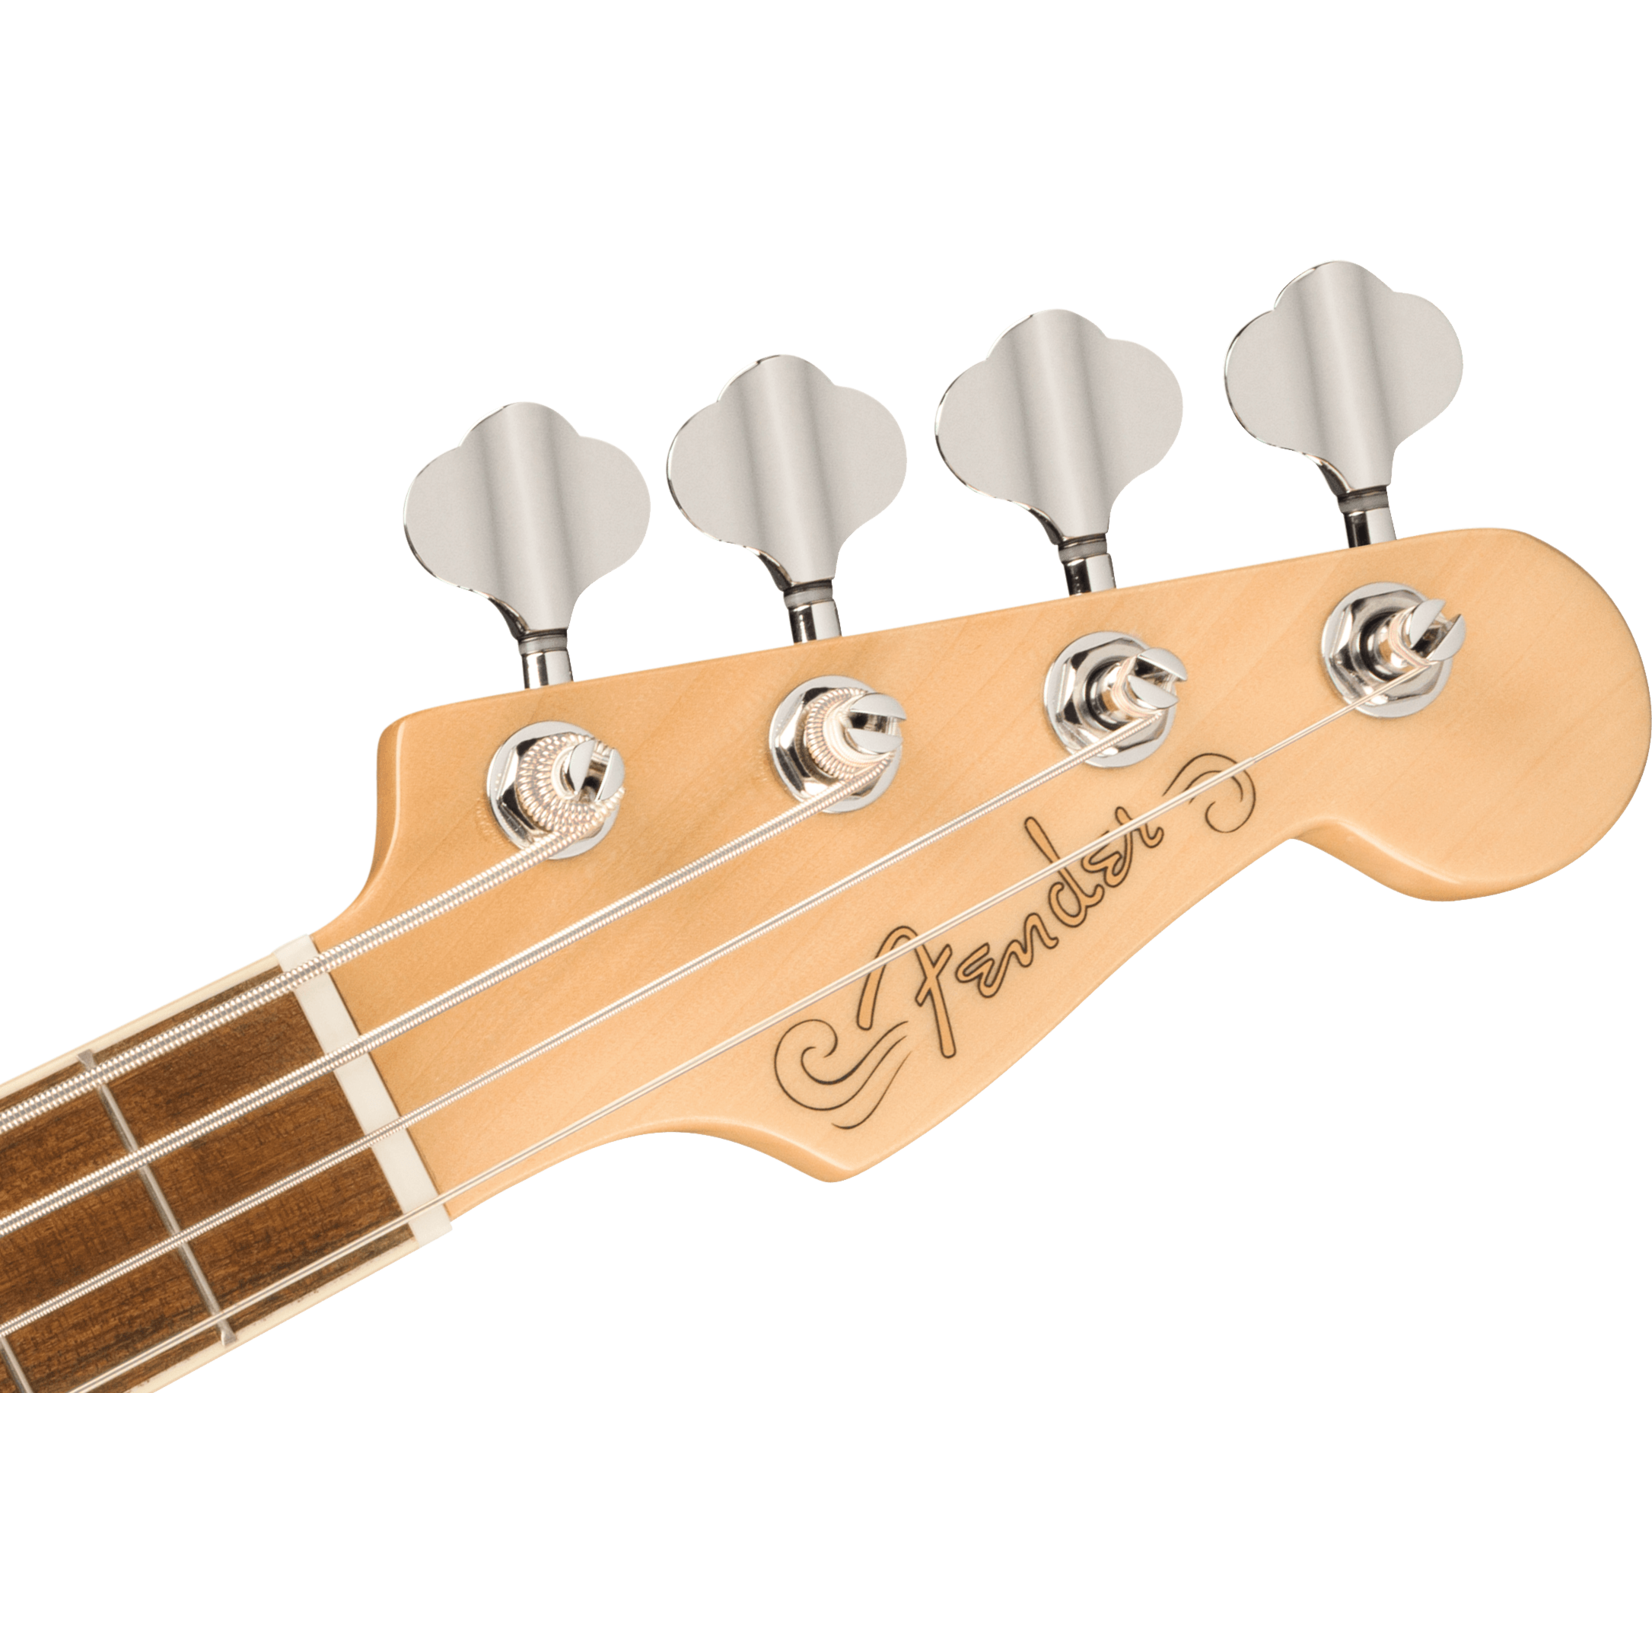 Fender Fullerton Precision Bass Uke, Walnut Fingerboard, Tortoiseshell Pickguard - 3-Color Sunburst